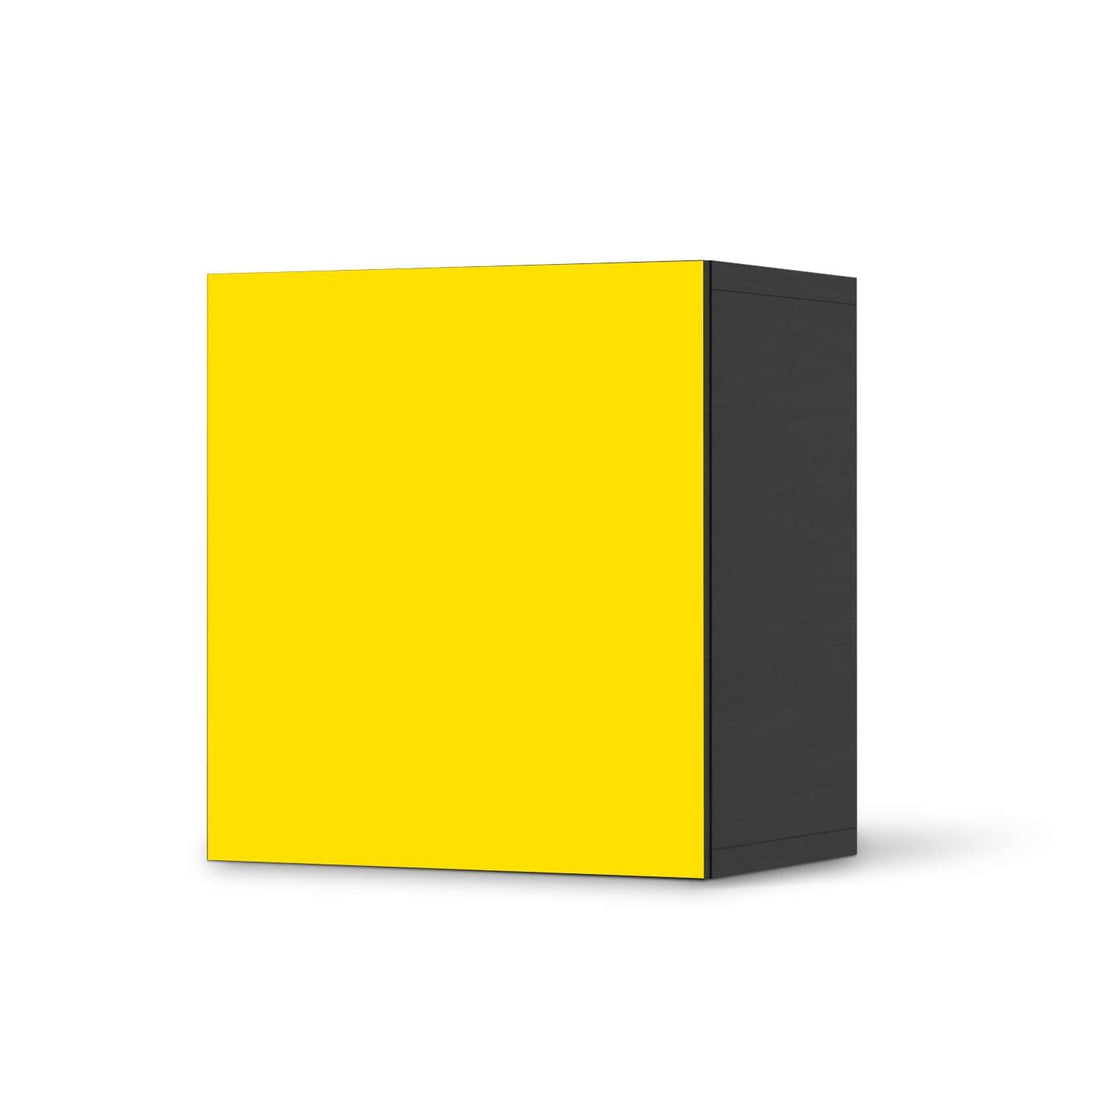 Klebefolie für Möbel Gelb Dark - IKEA Besta Regal 1 Türe - schwarz